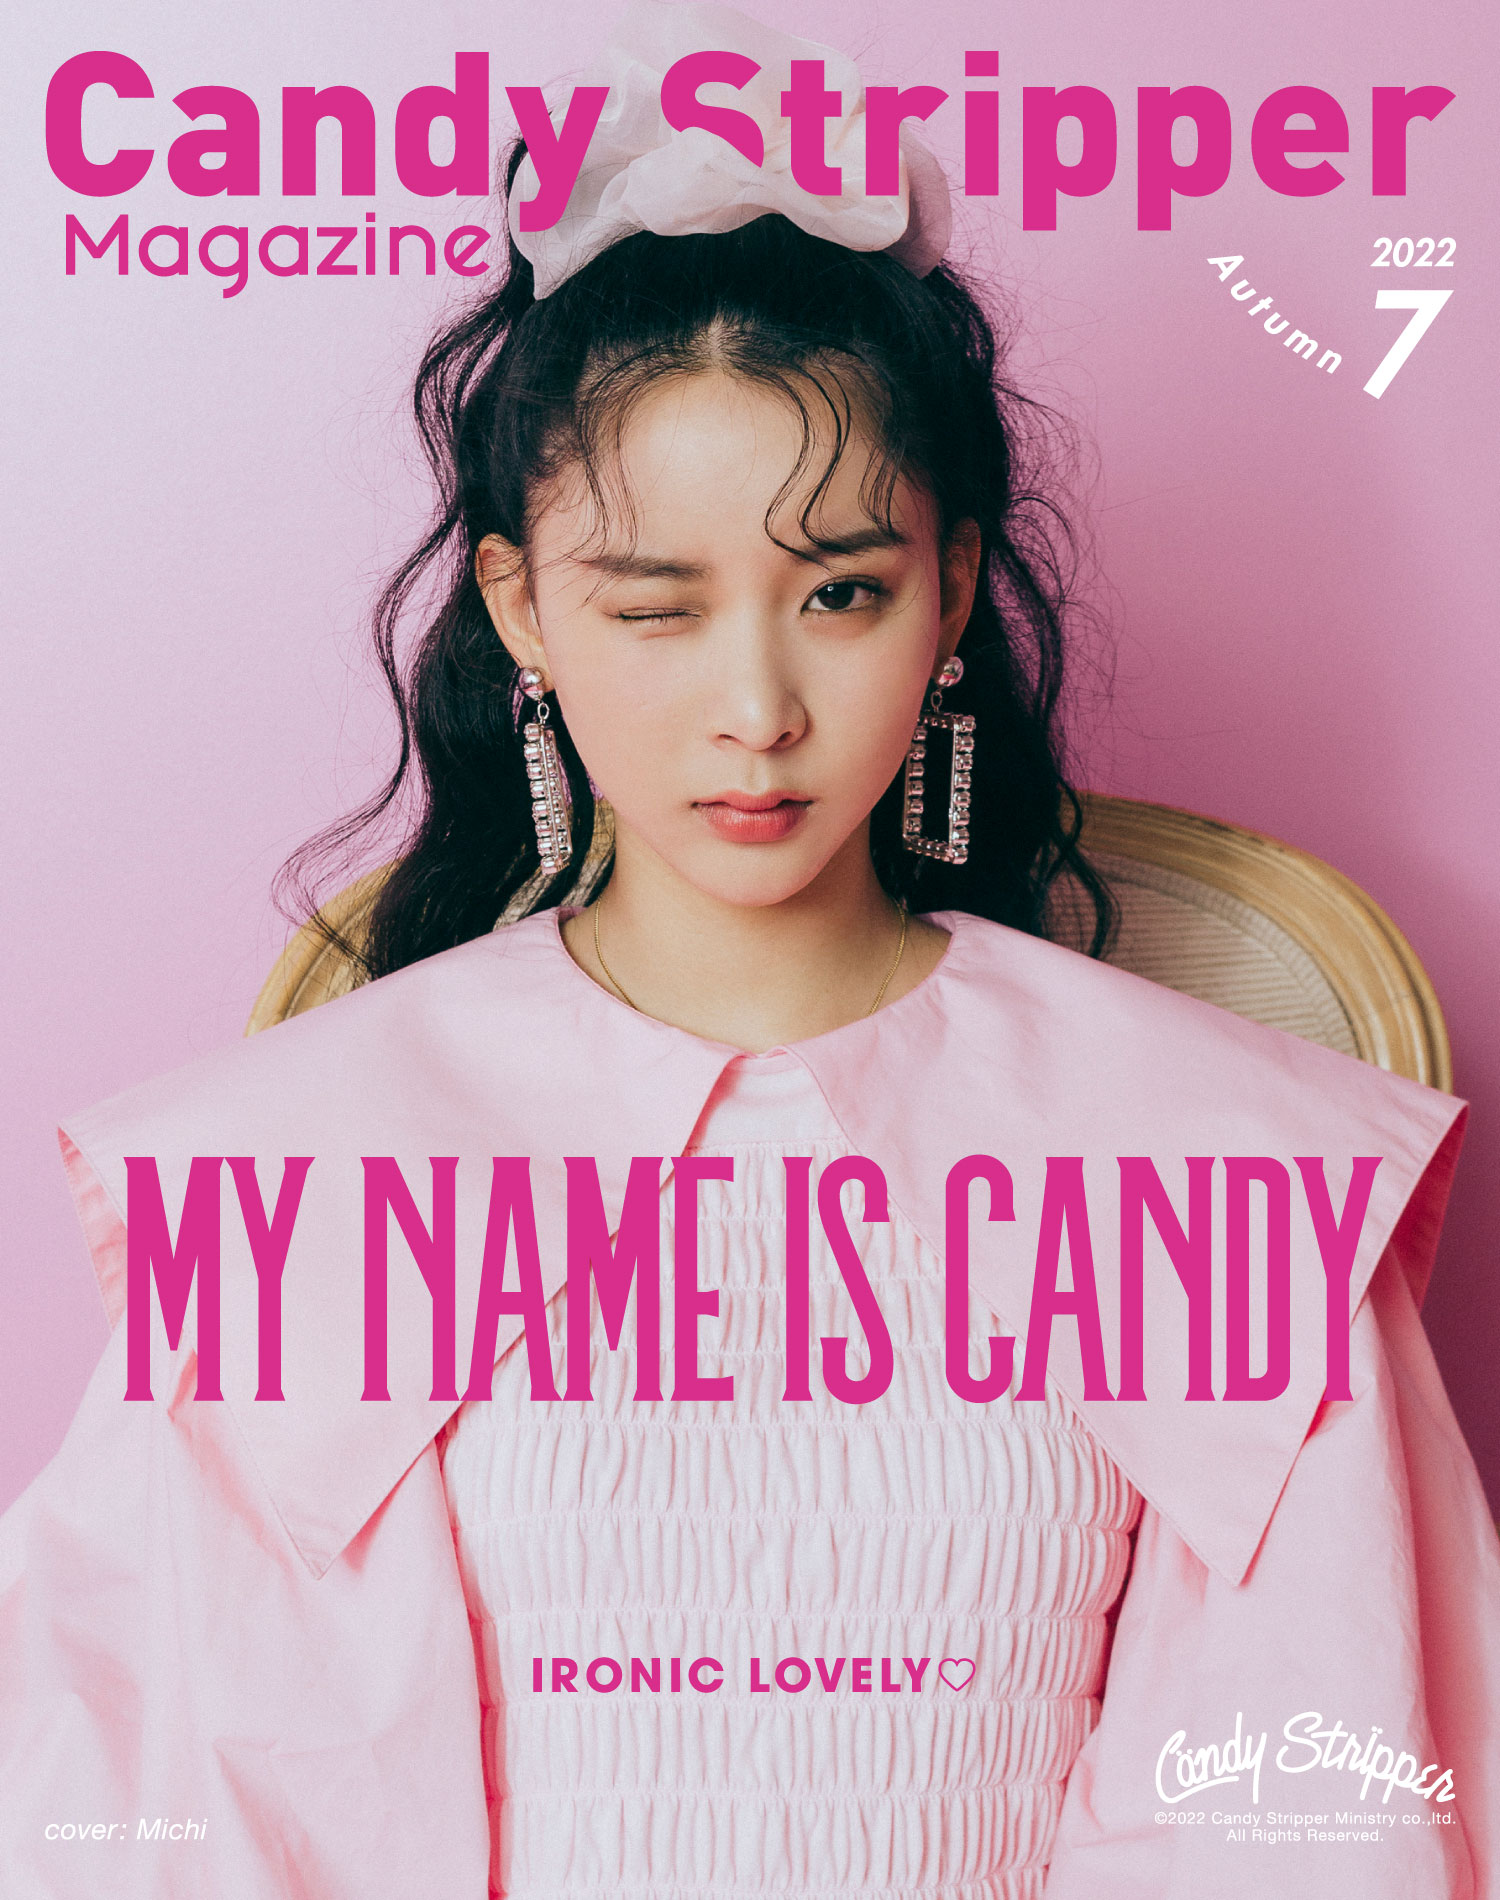 Candy Stripper magazine 2022 Summer 7